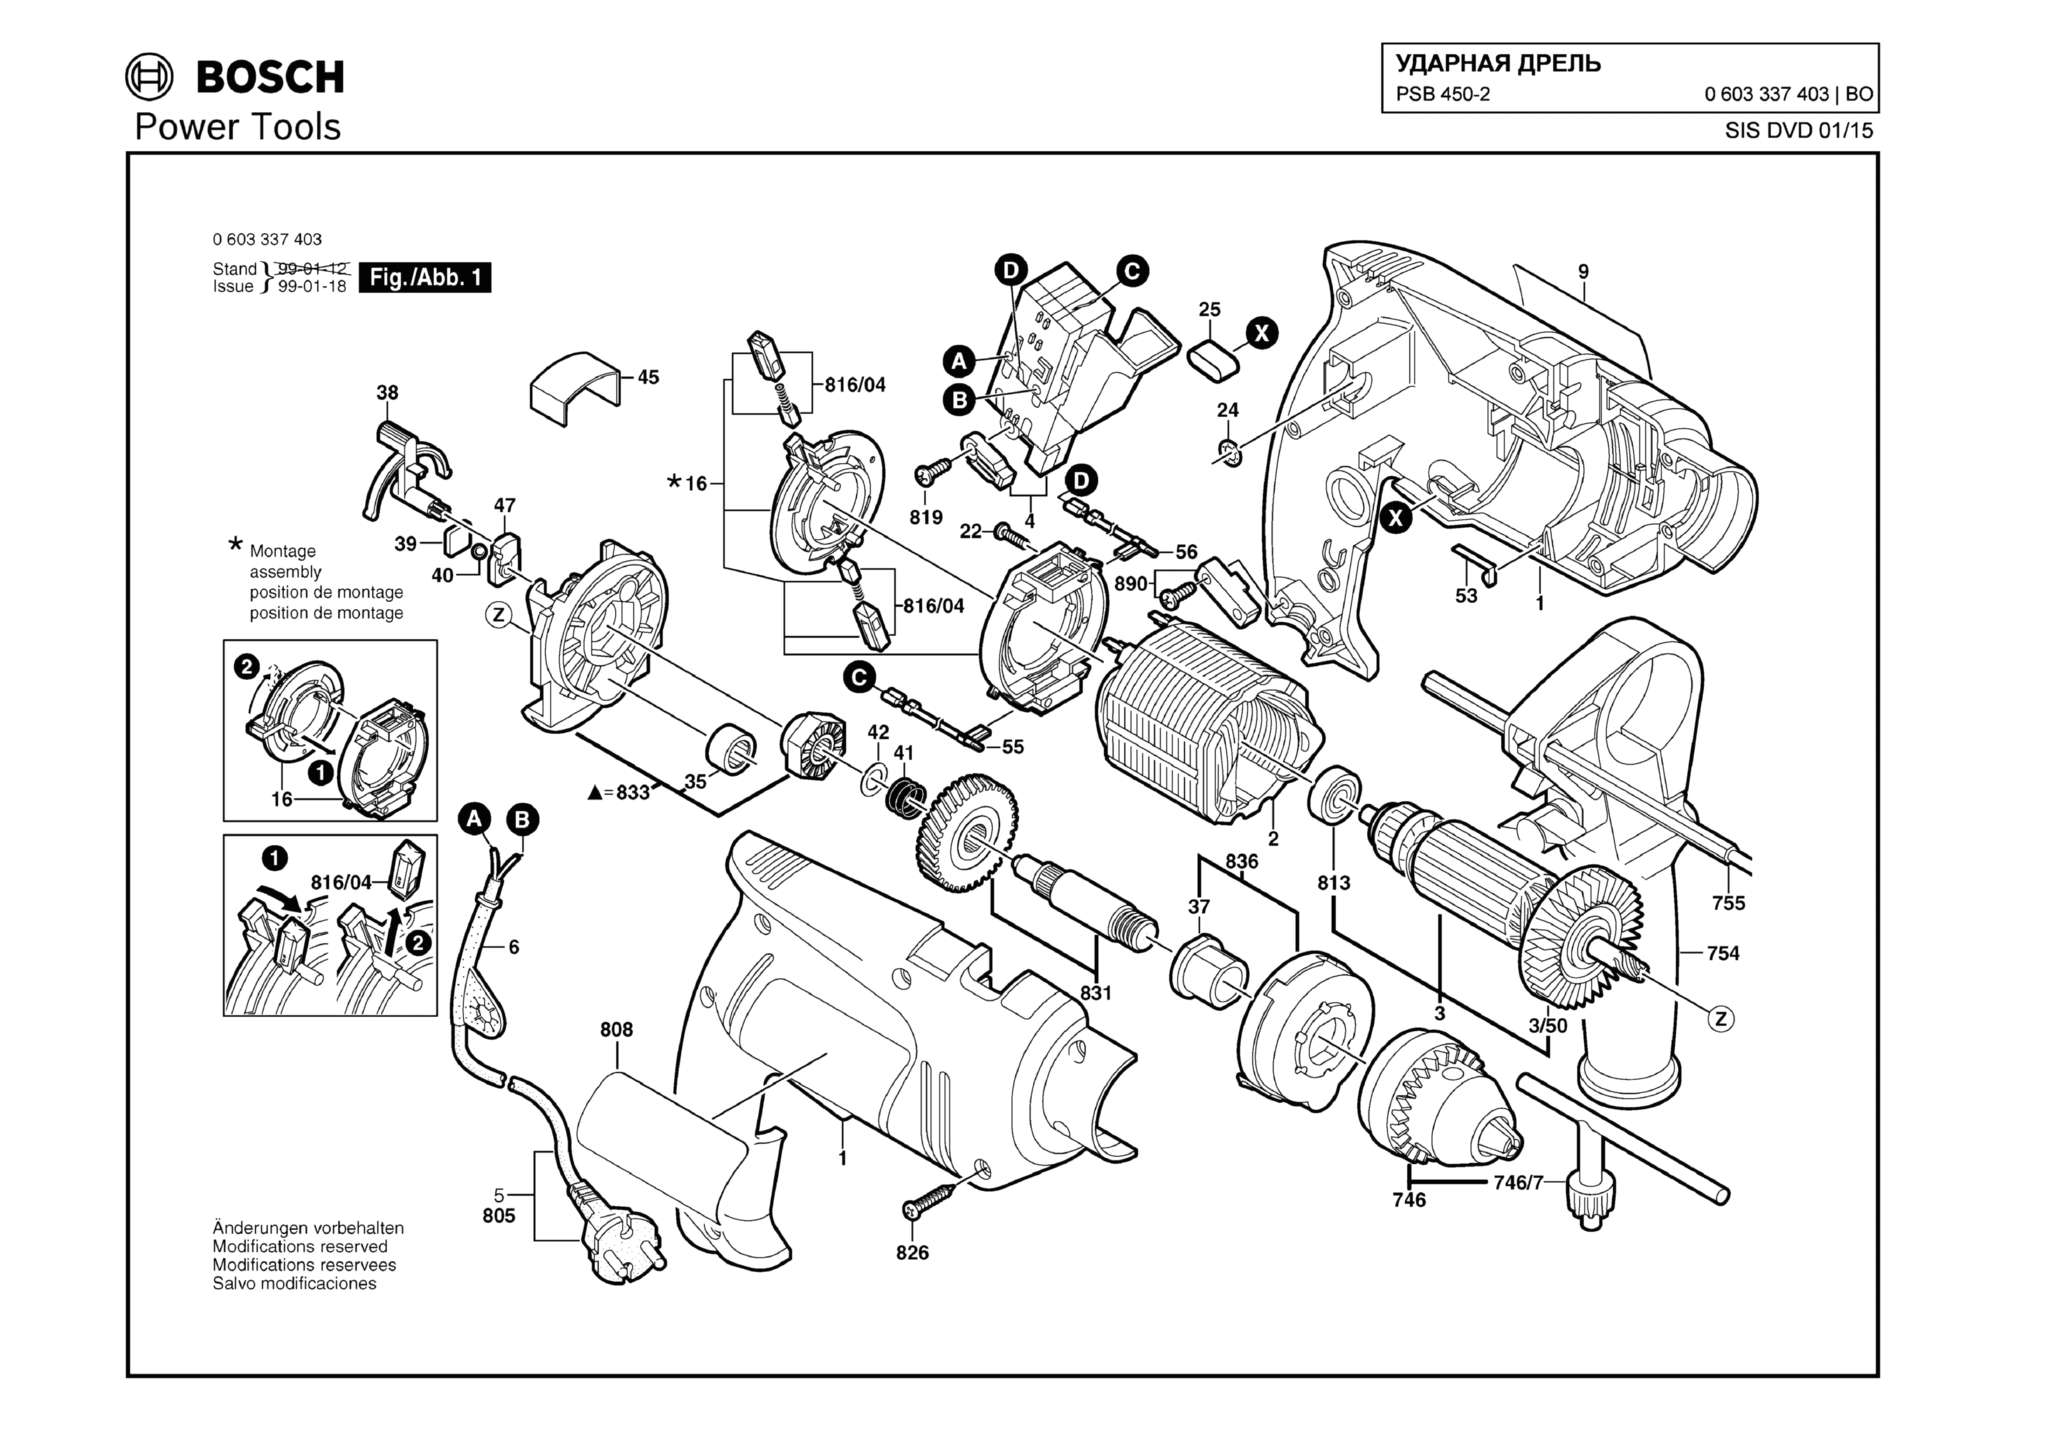 Запчасти, схема и деталировка Bosch PSB 450-2 (ТИП 0603337403)